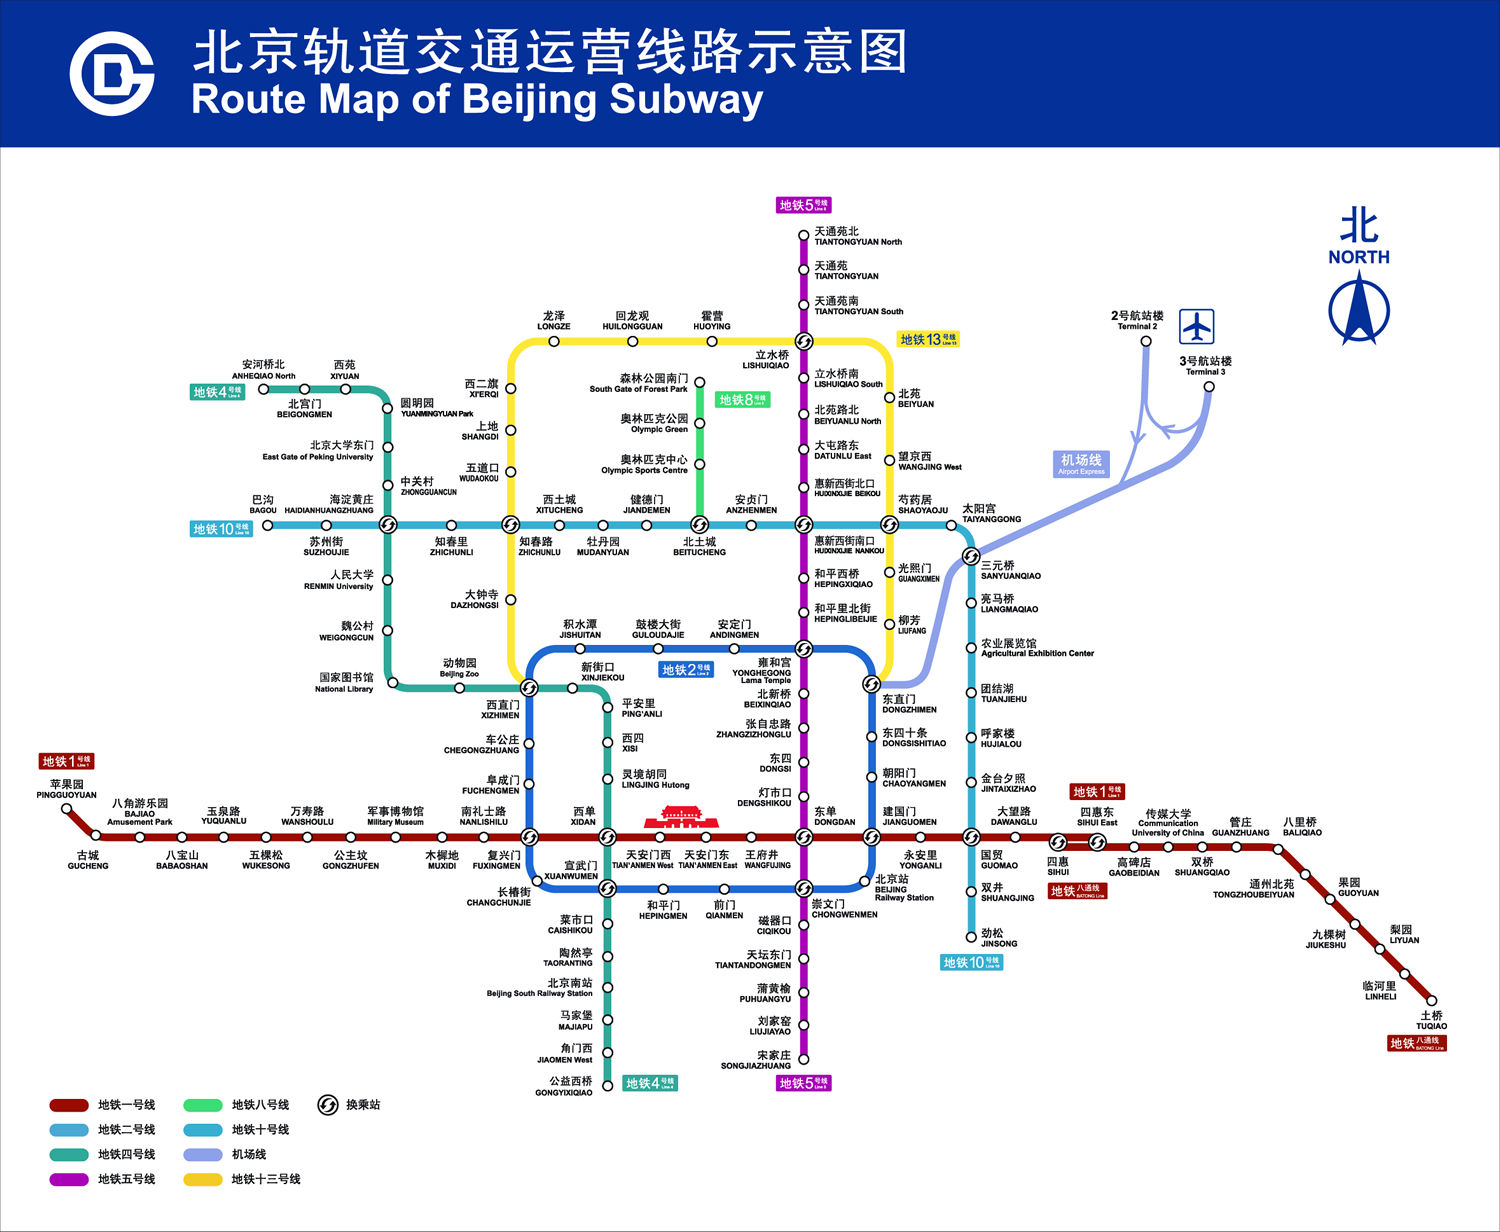 从今年(2011年)到2015年,北京的轨道交通在原规划十余条地铁线建设的